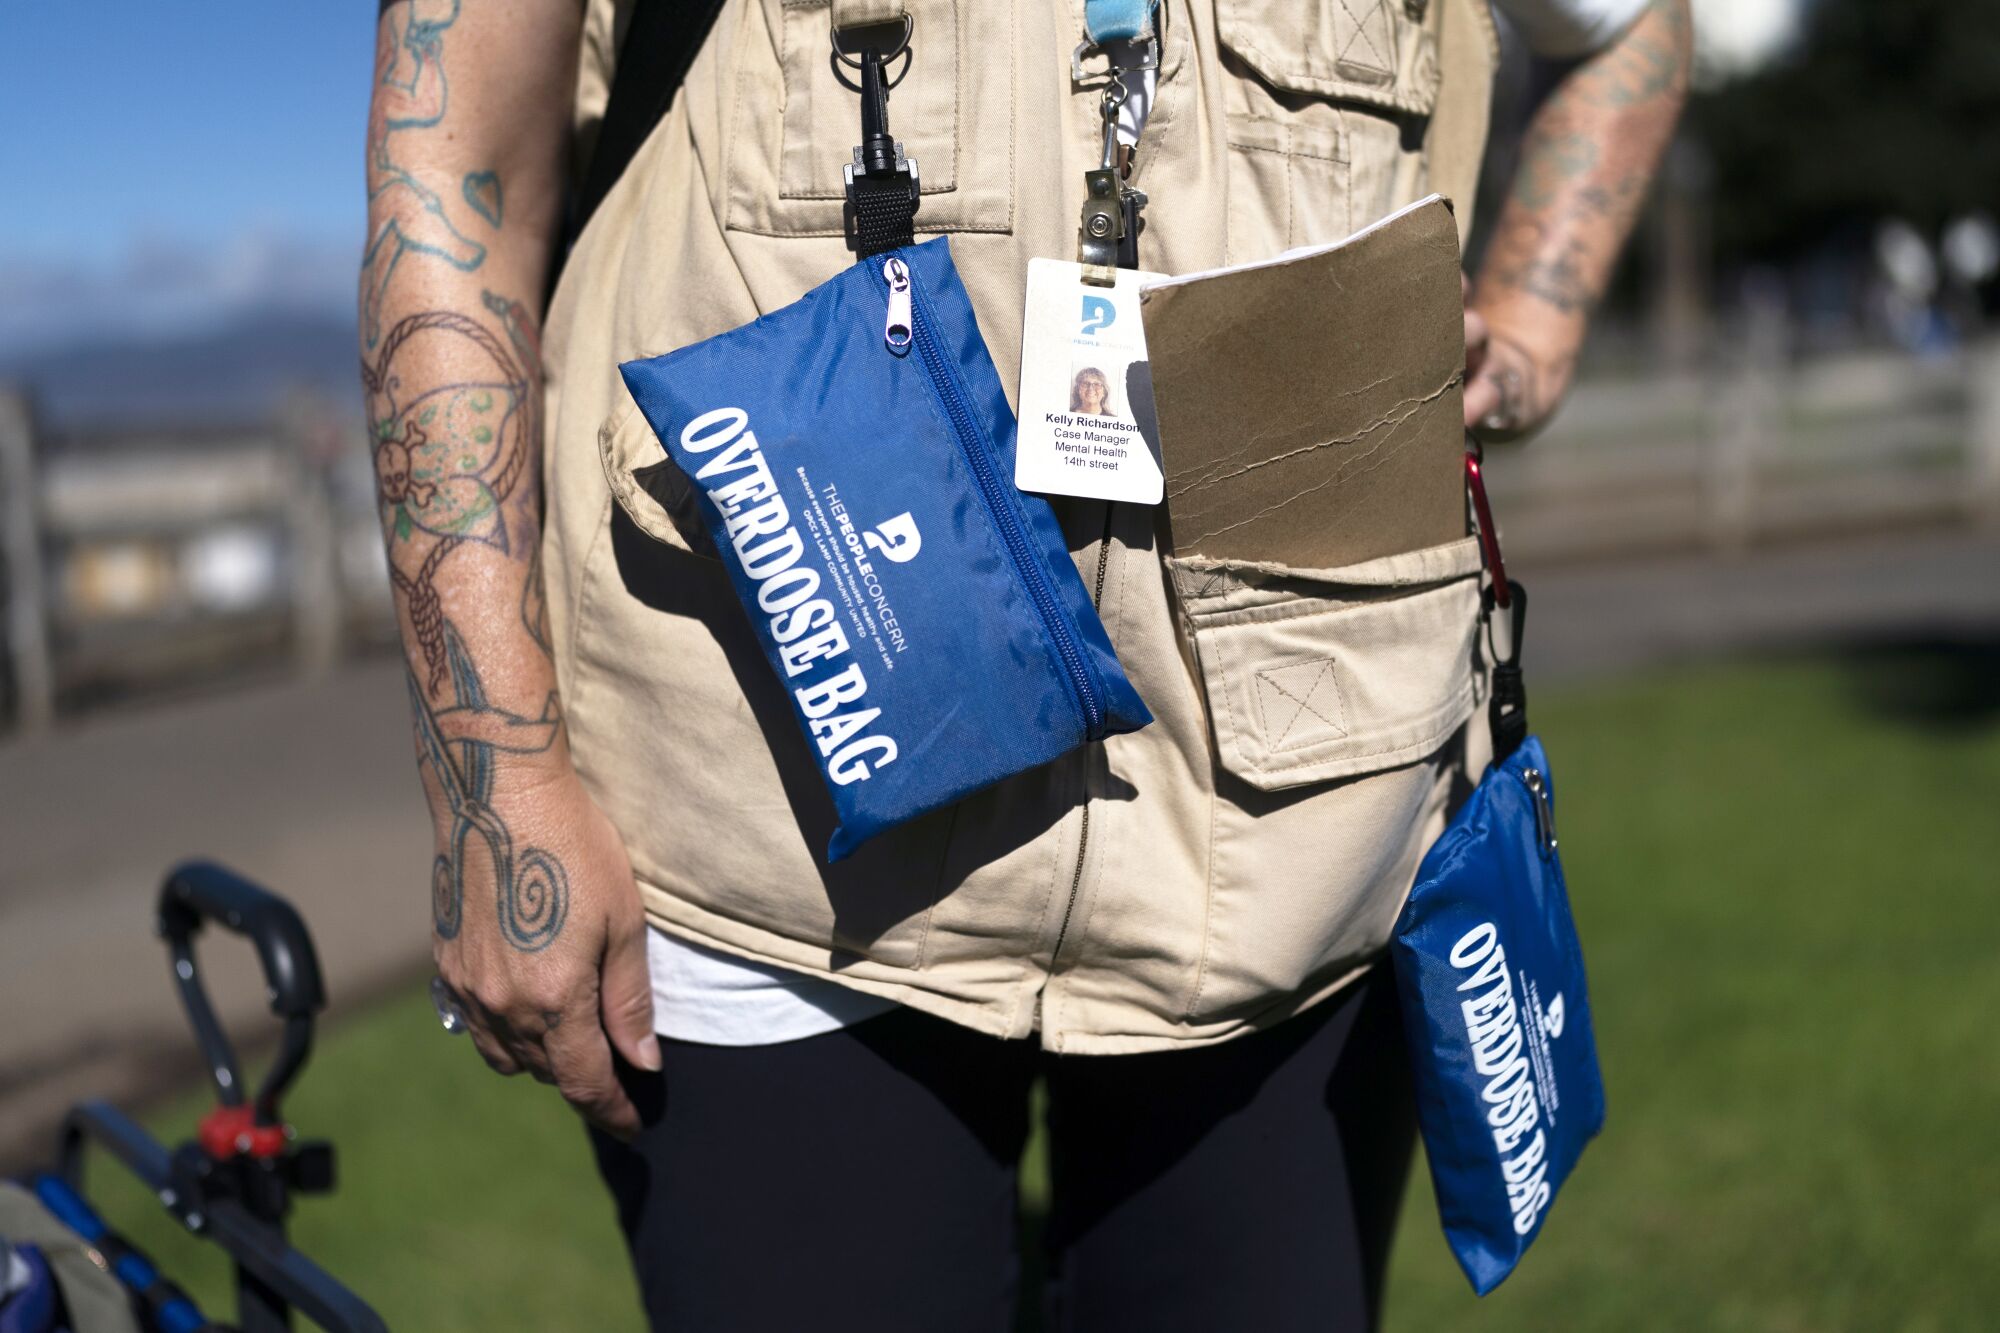 Oberkörperansicht eines Mannes, der eine hellbraune Weste trägt, an der kleine Taschen mit Aufschrift hängen "Überdosierungsbeutel."